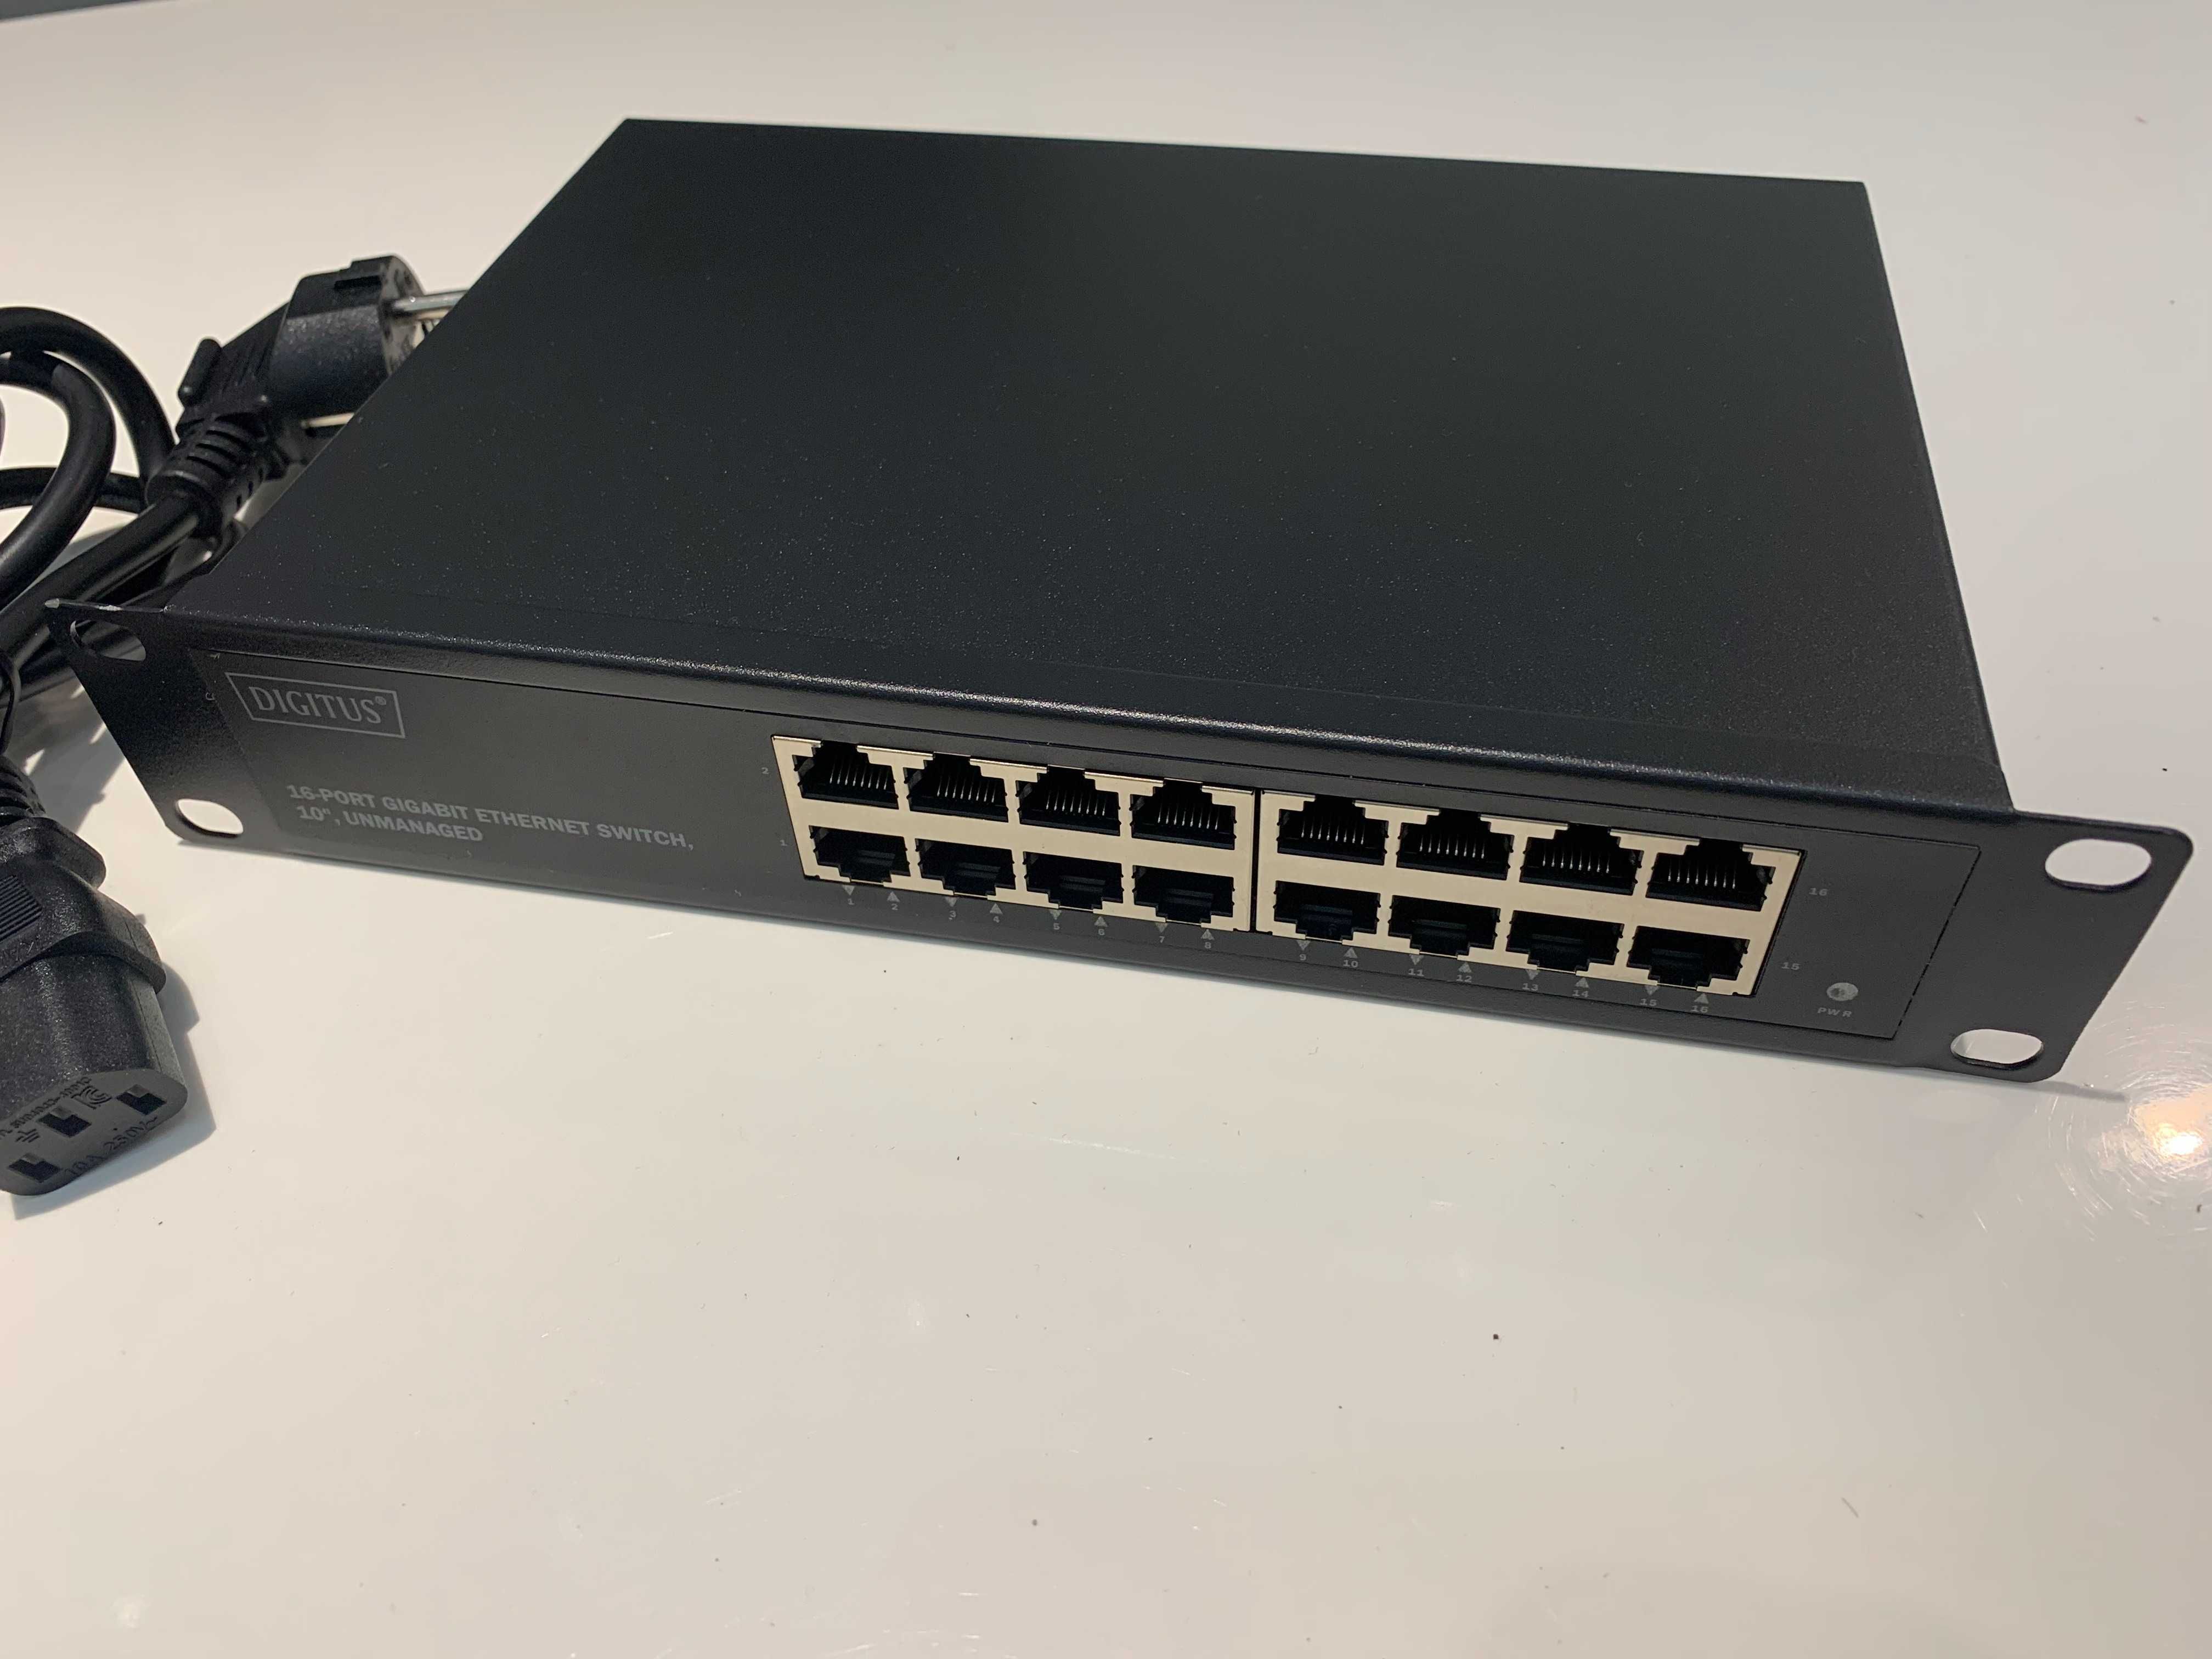 DIGITUS Przełącznik sieciowy Gigabit Ethernet 10 cali 16 portów